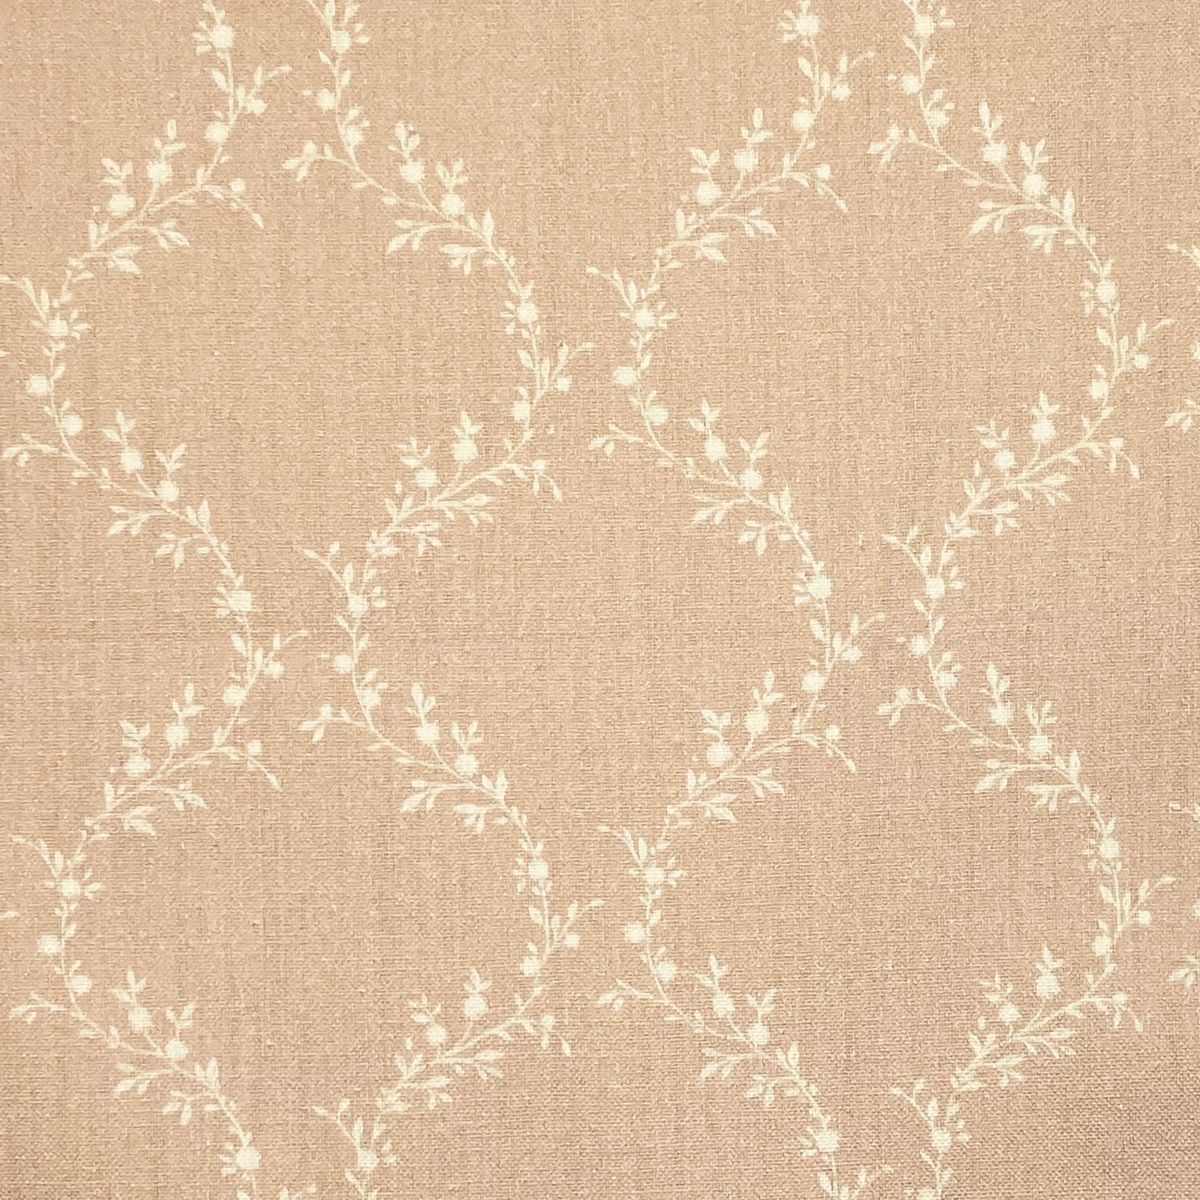 Jasmina Blush Fabric by Chatham Glyn